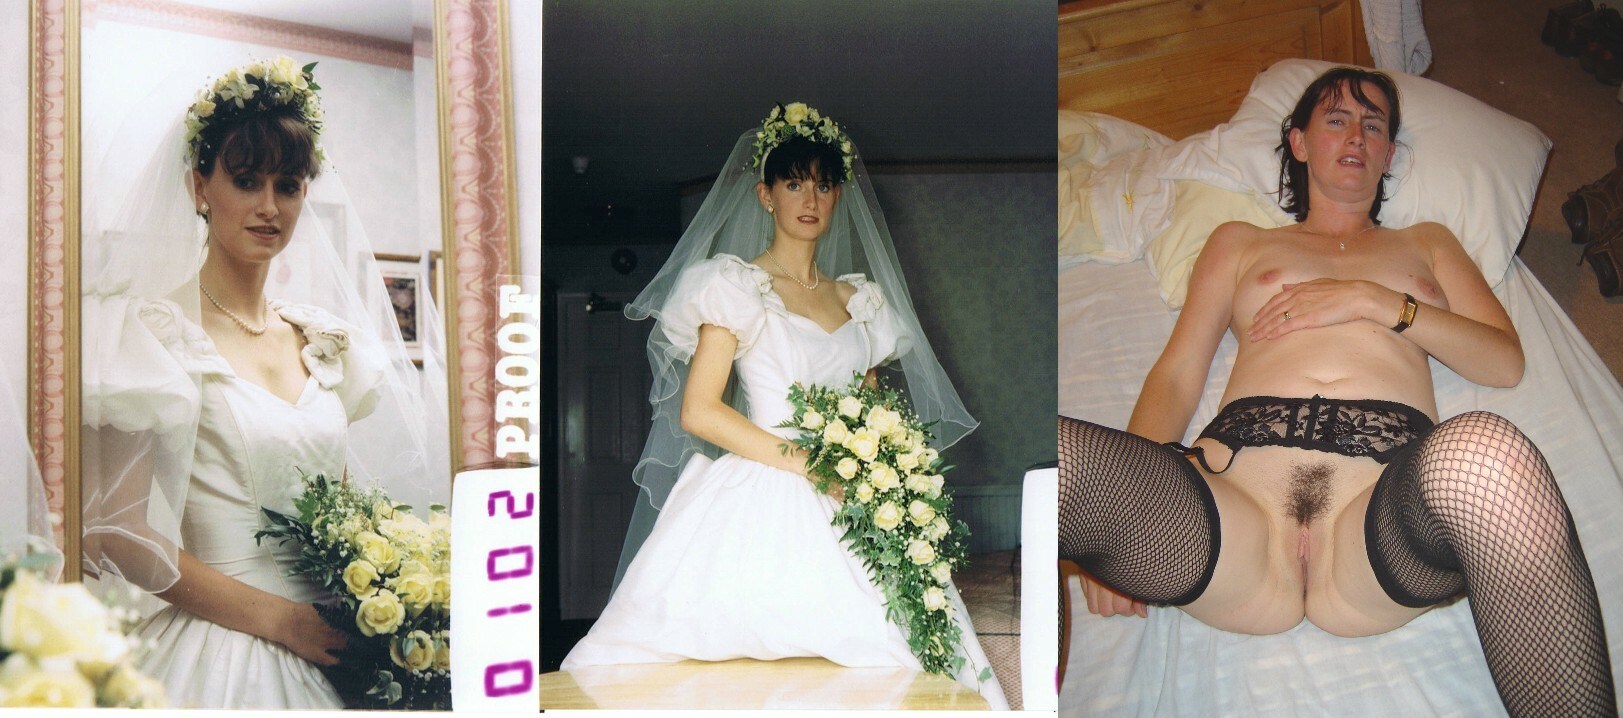 голая невеста с голой мамой фото фото 50